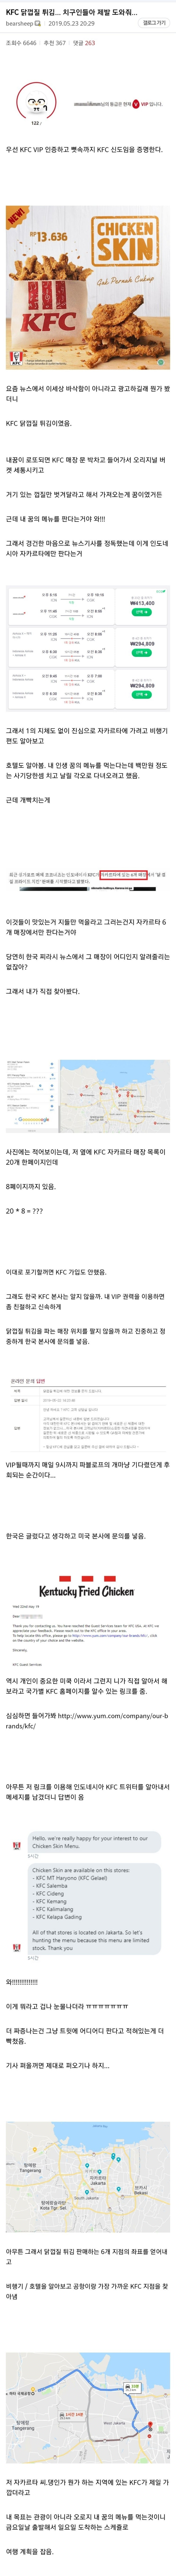 KFC 닭껍질 튀김 출시 치갤러의 집념? 디시인들은 바이럴마케팅 강력의심